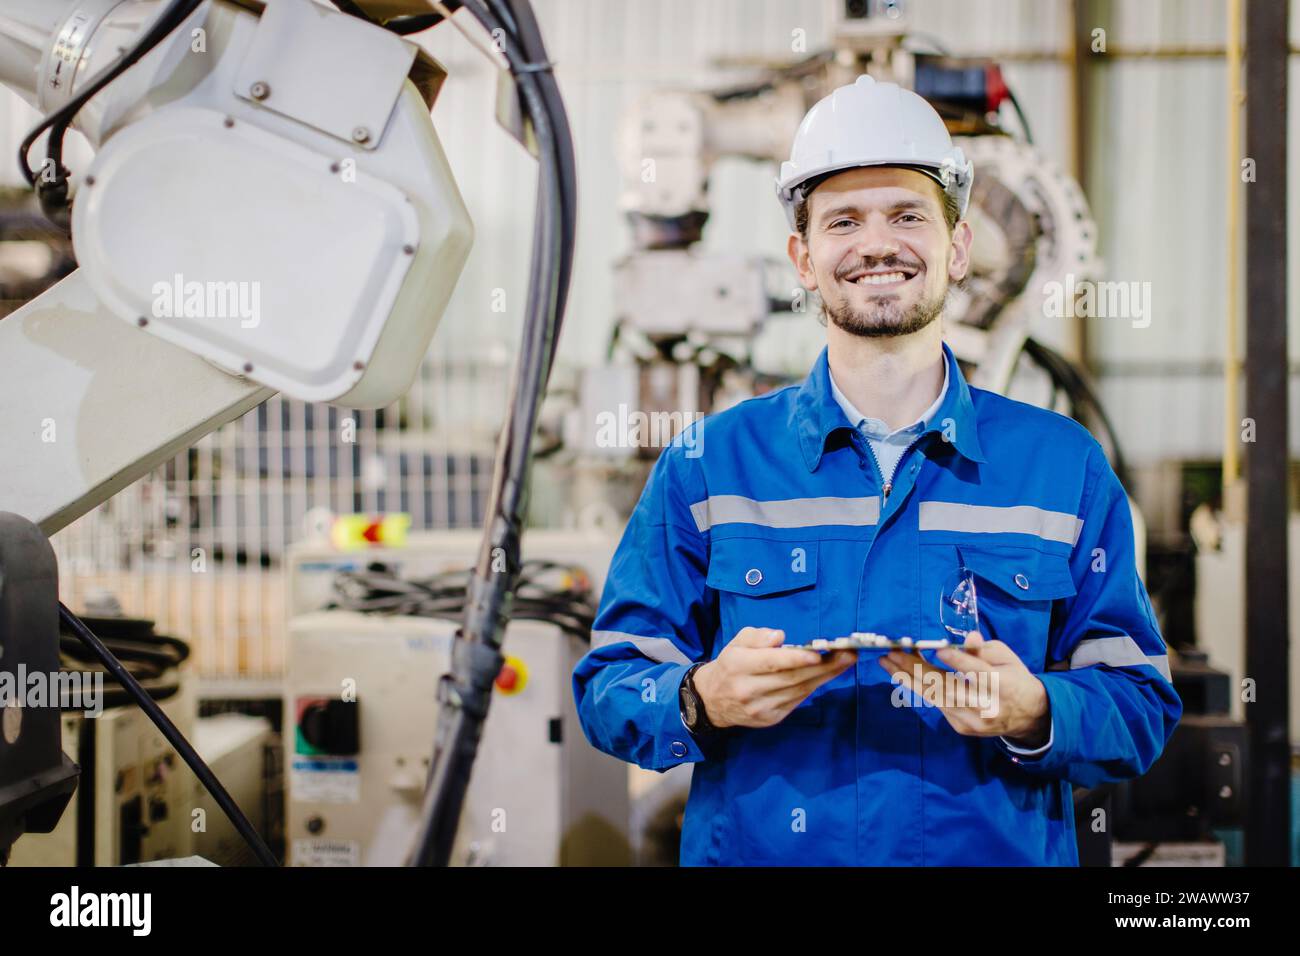 Porträt glücklicher lächelnder Ingenieur Servicemitarbeiter in der Roboterwerkstatt Roboterarm-Anlagenmontageindustrie. Stockfoto